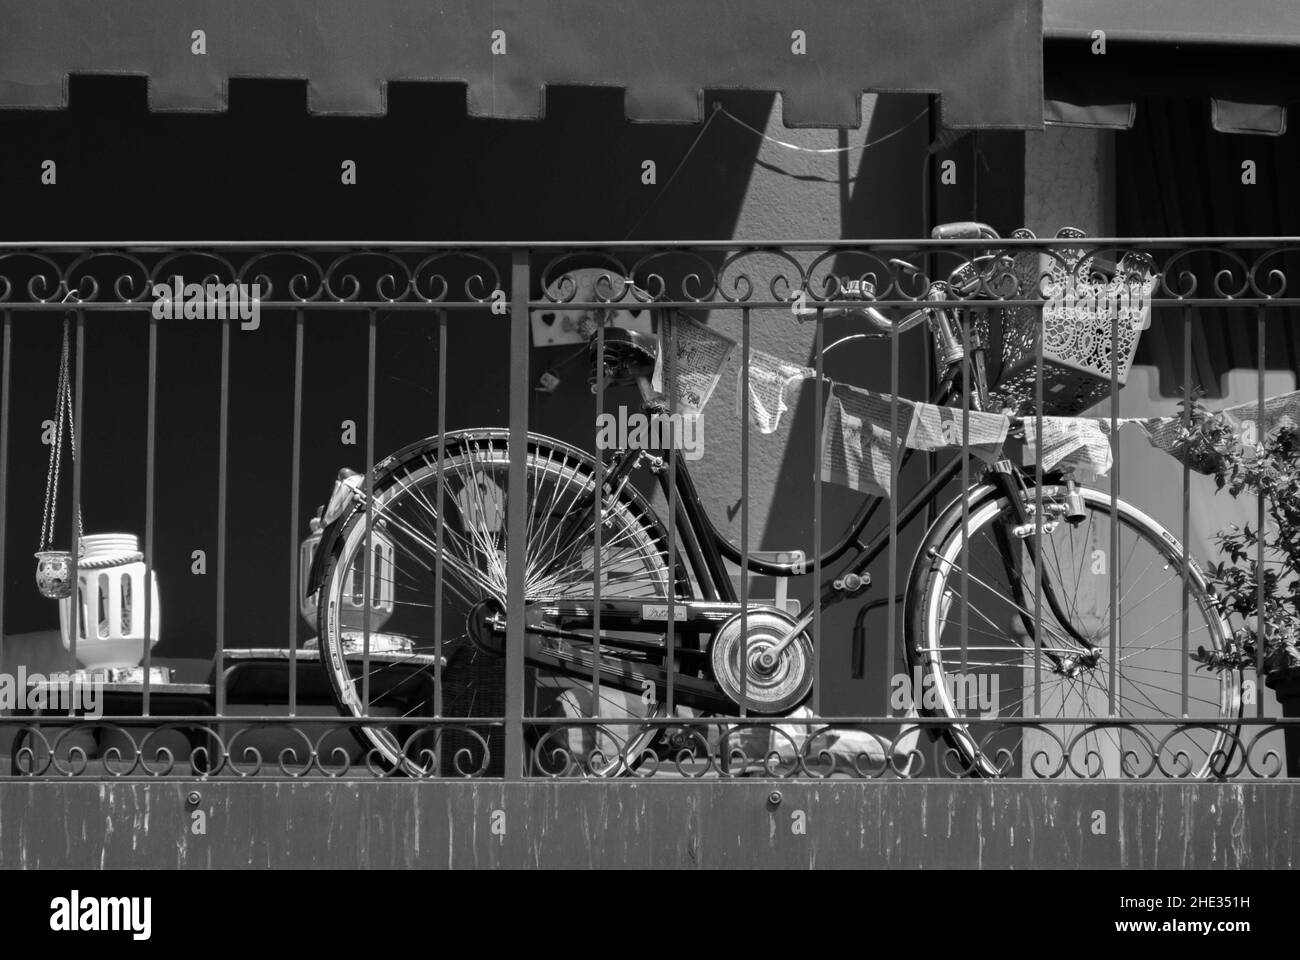 Fahrrad siher auf dem Balkon am Gardasee in Italien abgestellt Foto de stock